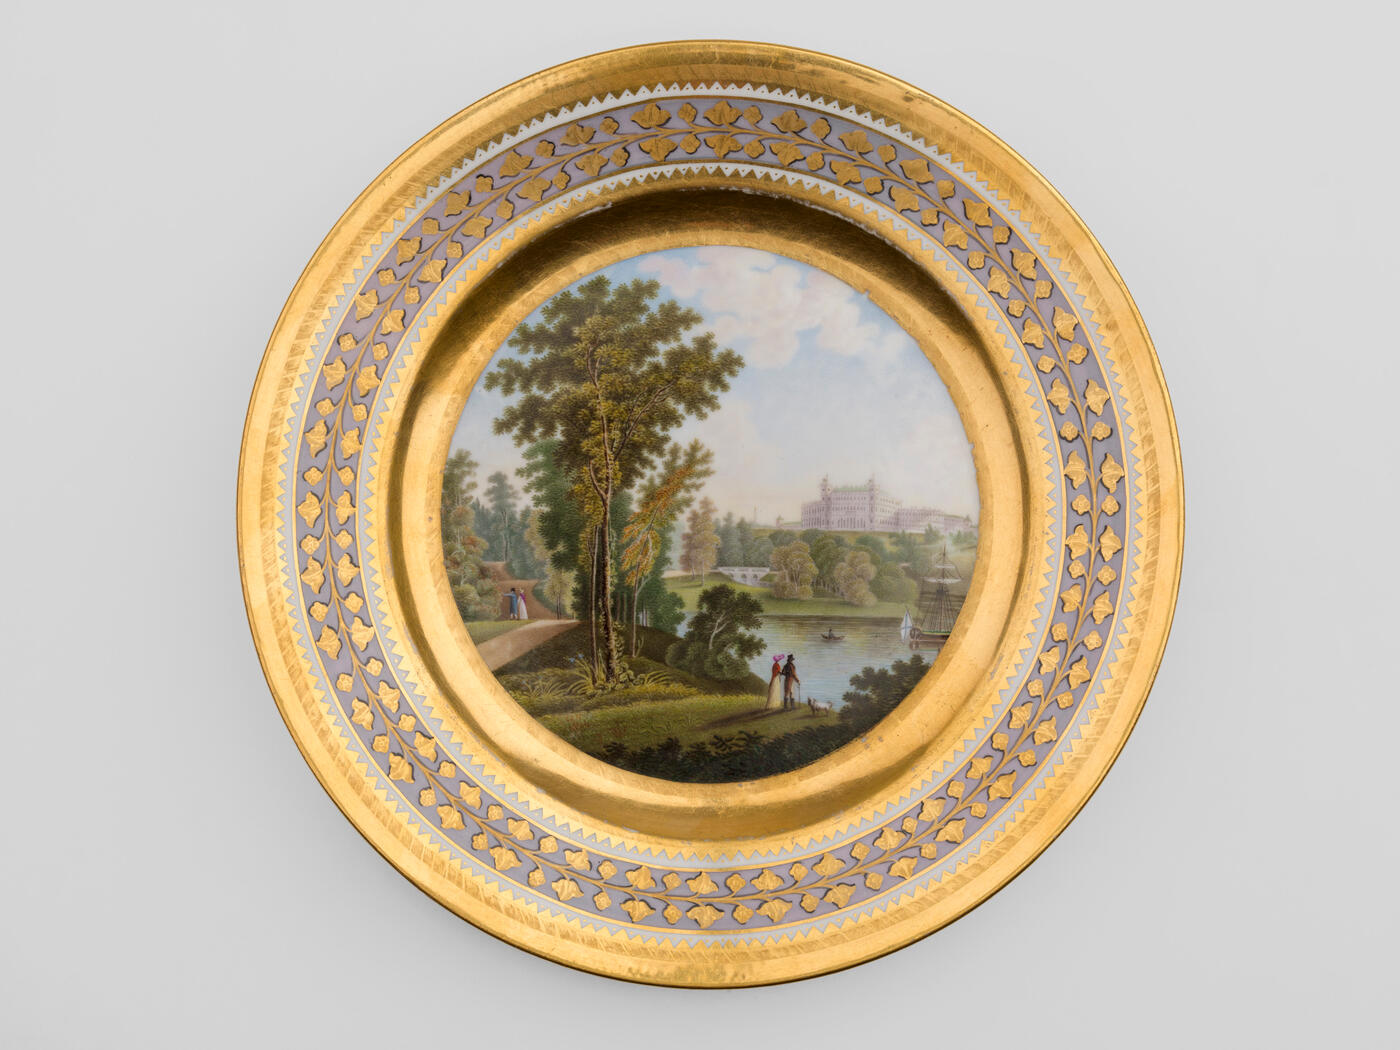 A Porcelain Dessert Plate from the Babigon Service